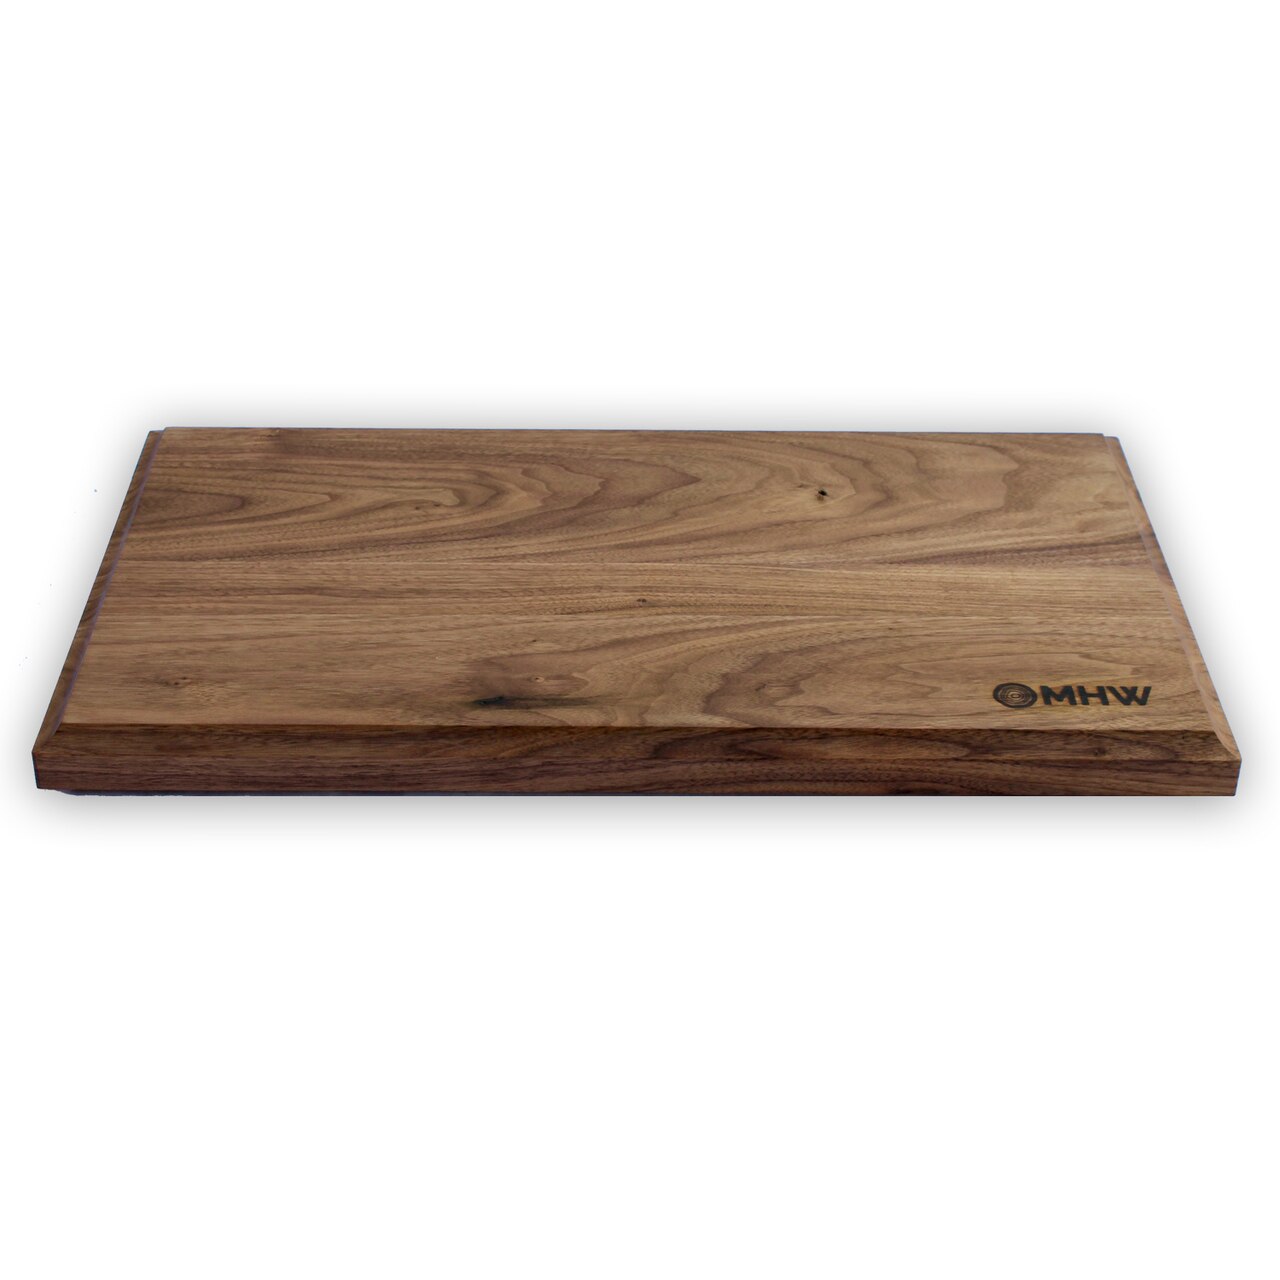 https://www.woodcuttingboardstore.com/wp-content/uploads/2020/06/12x16-Walnut-Cutting-Board-wFREE-Board-Butter1.jpg